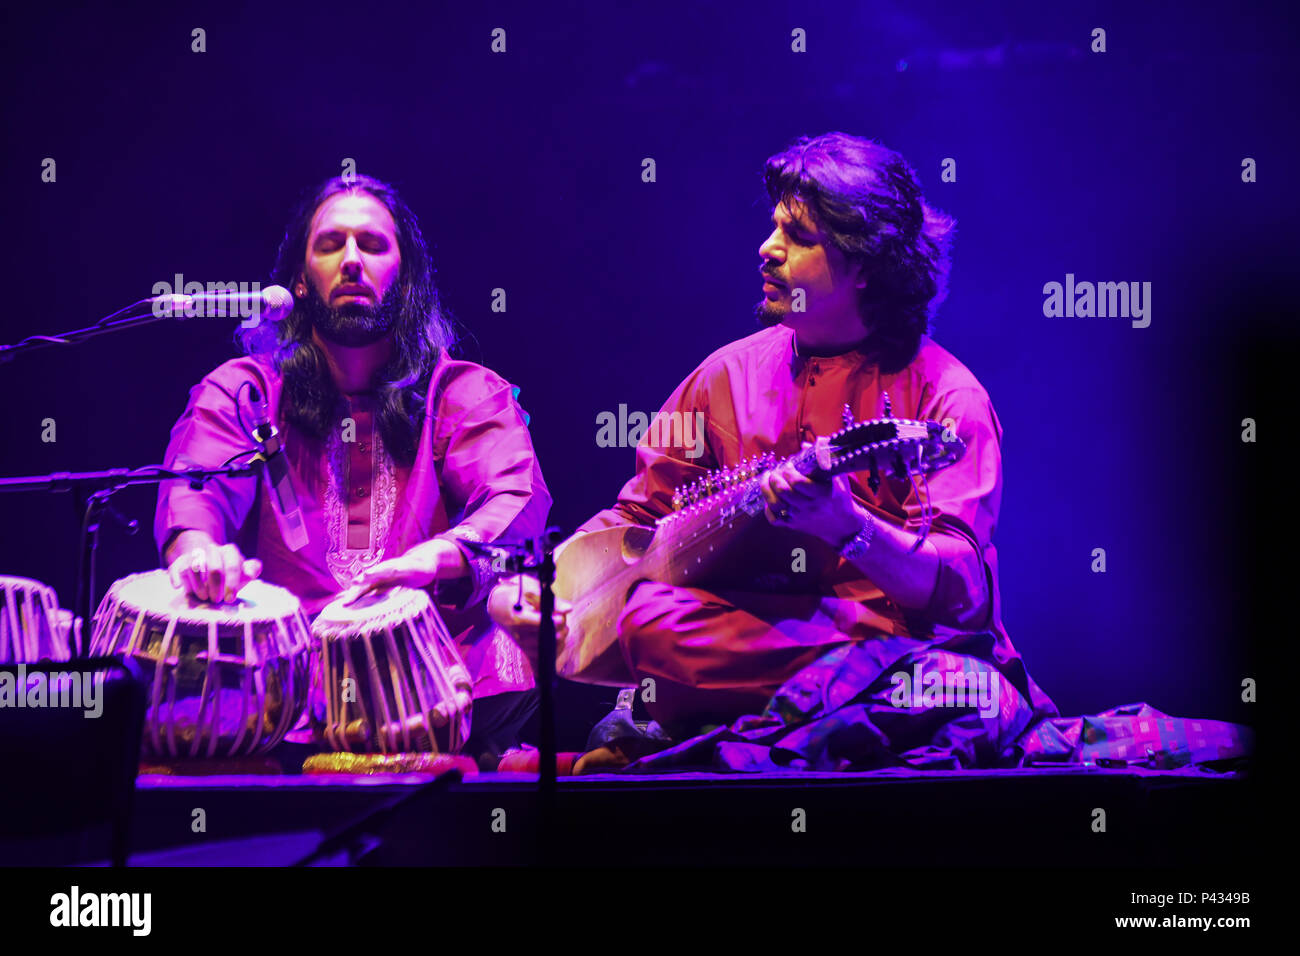 Josh by Salar Nader & Homayoun Sakhi at the Master Musicians of the Aga Khan Music Initiative at the Royal Albert Hall, London, UK on June 20 2018. Stock Photo